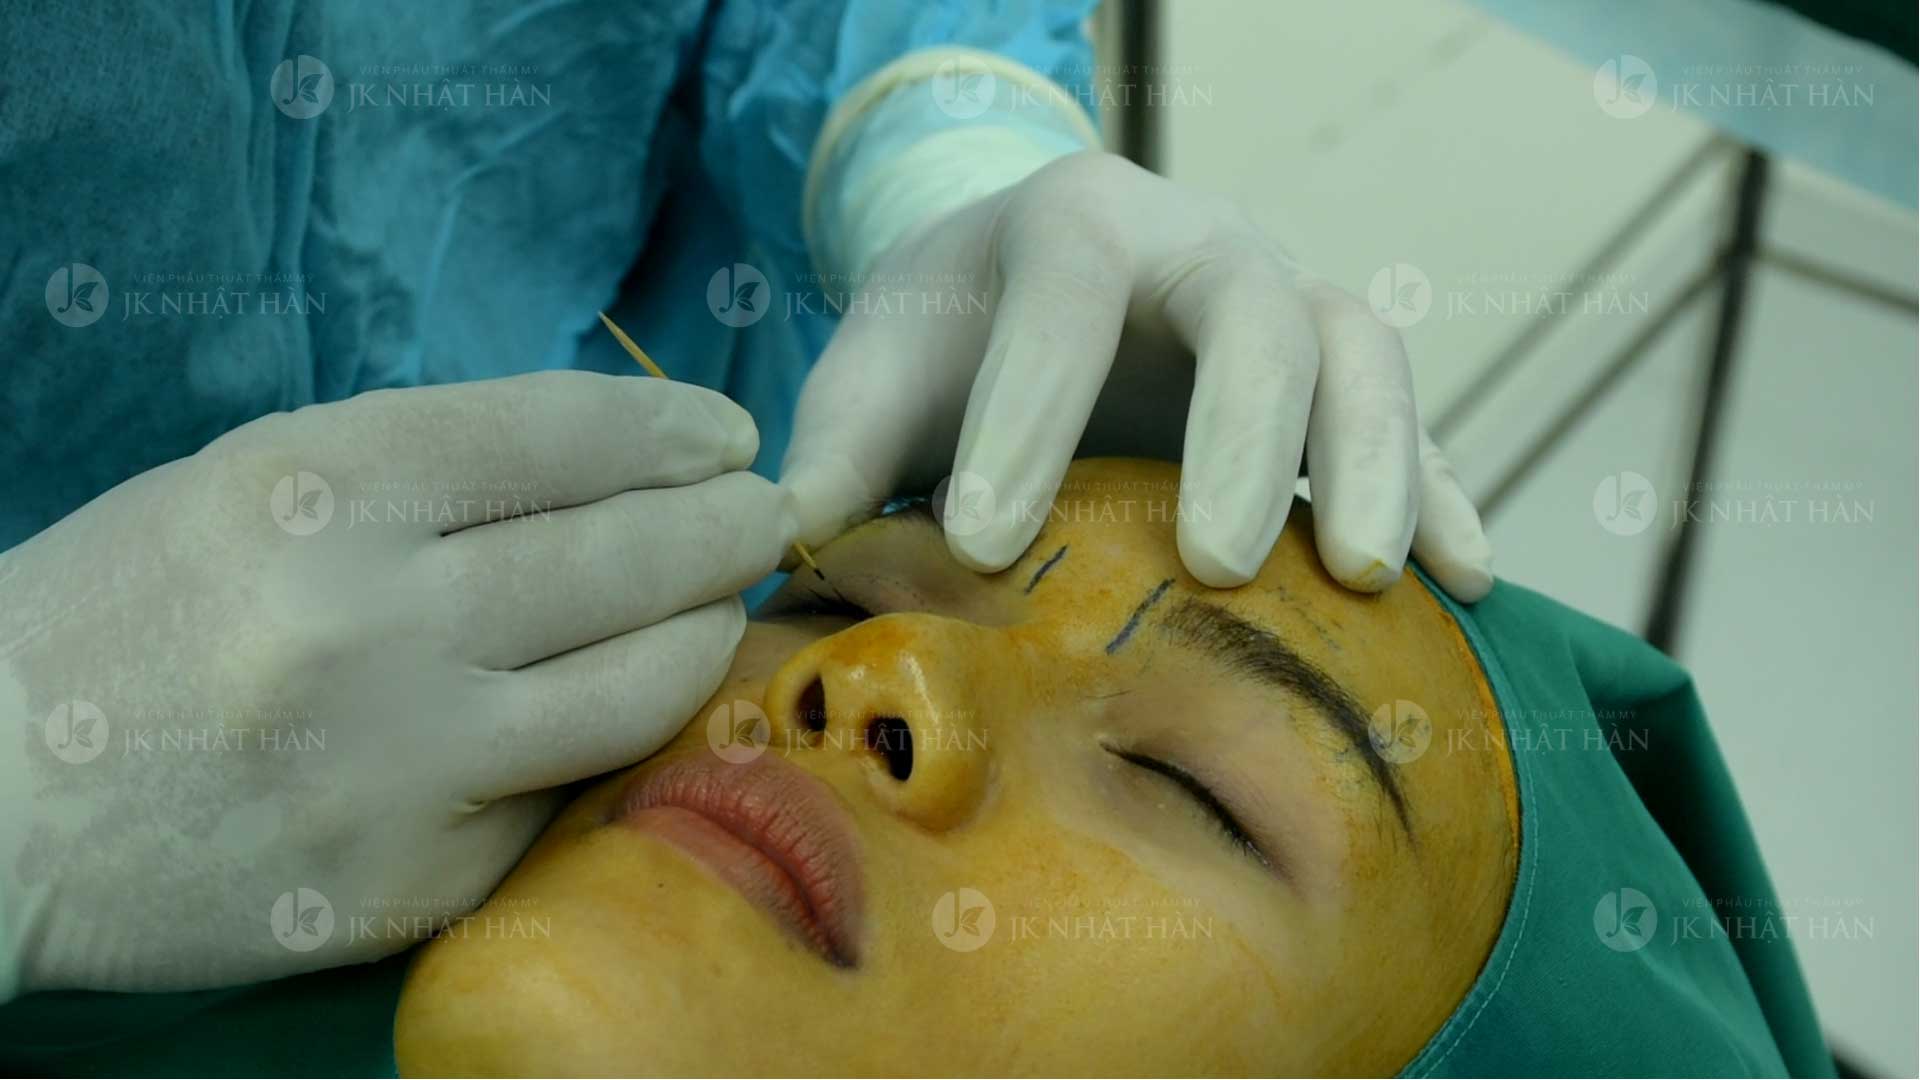 bác sĩ tạo hình mắt 2 mí không phẫu thuật tại viện thẩm mỹ jk nhật hàn